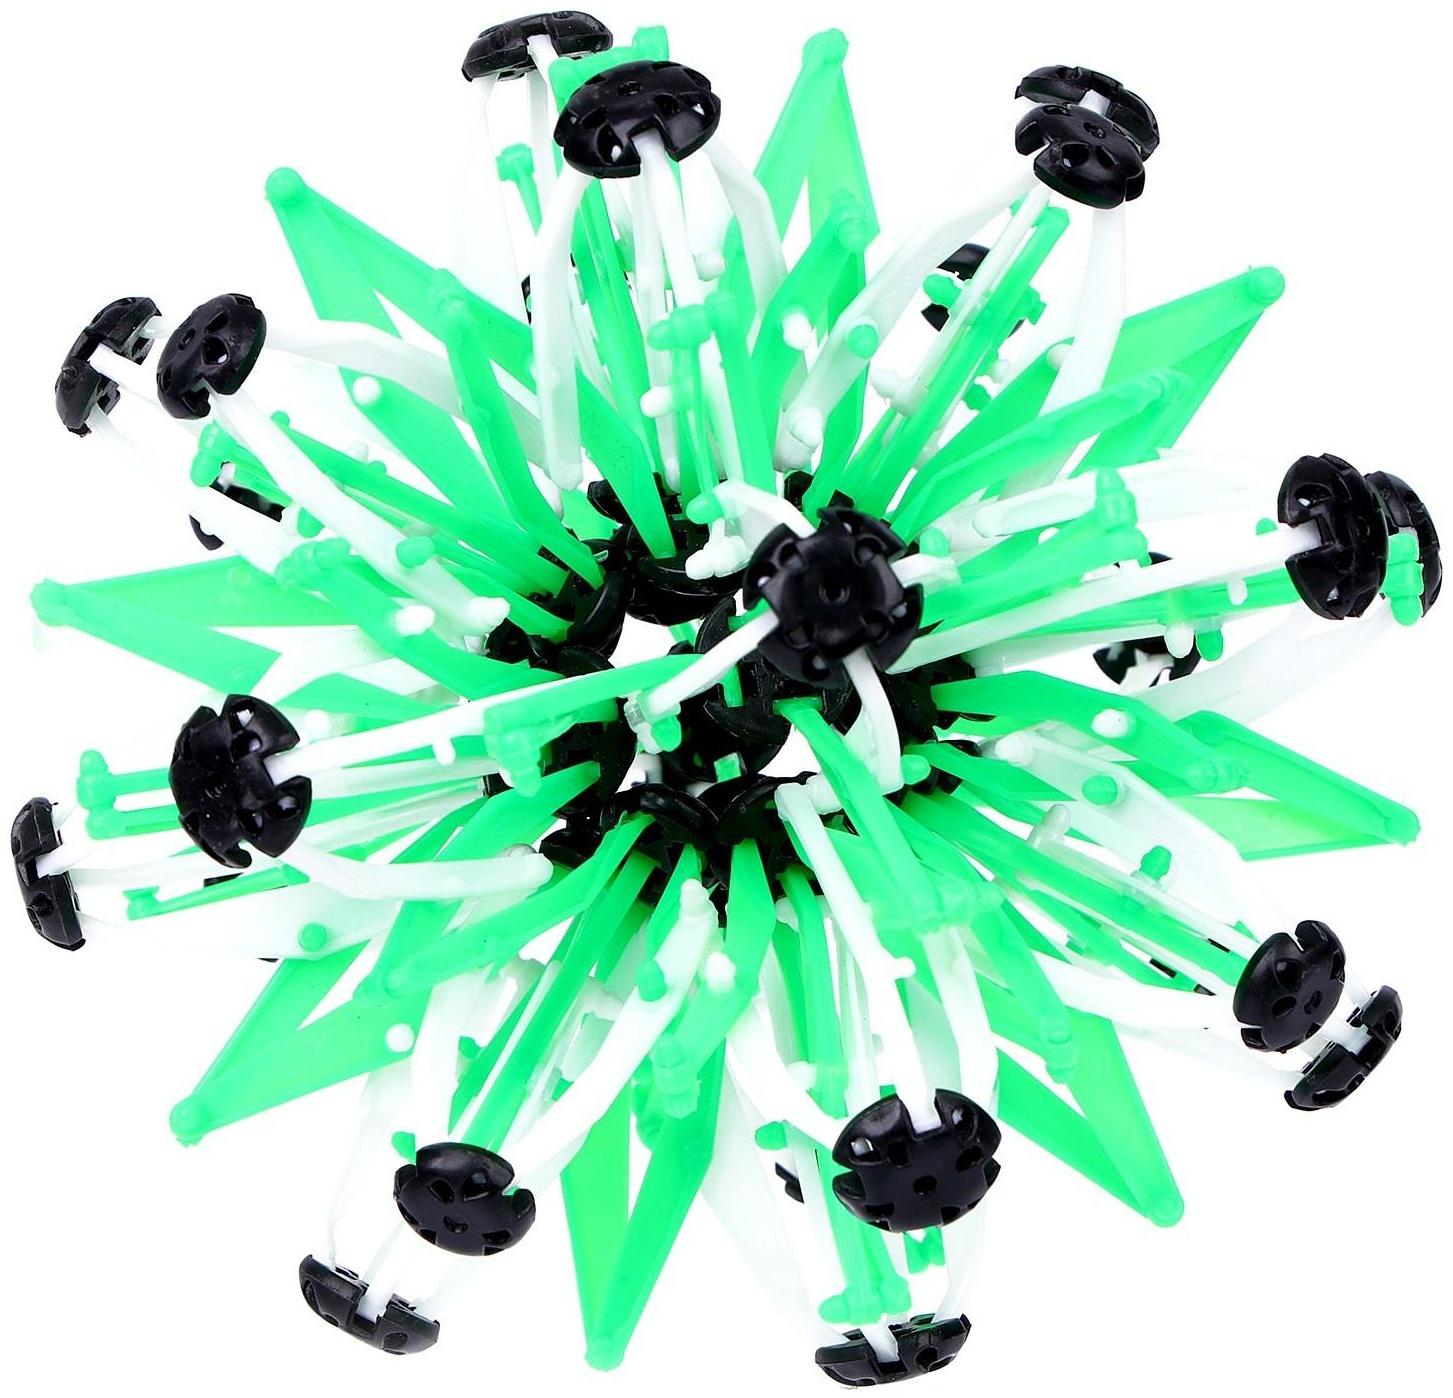 Мяч-трансформер «Иголка», цвет зелёный